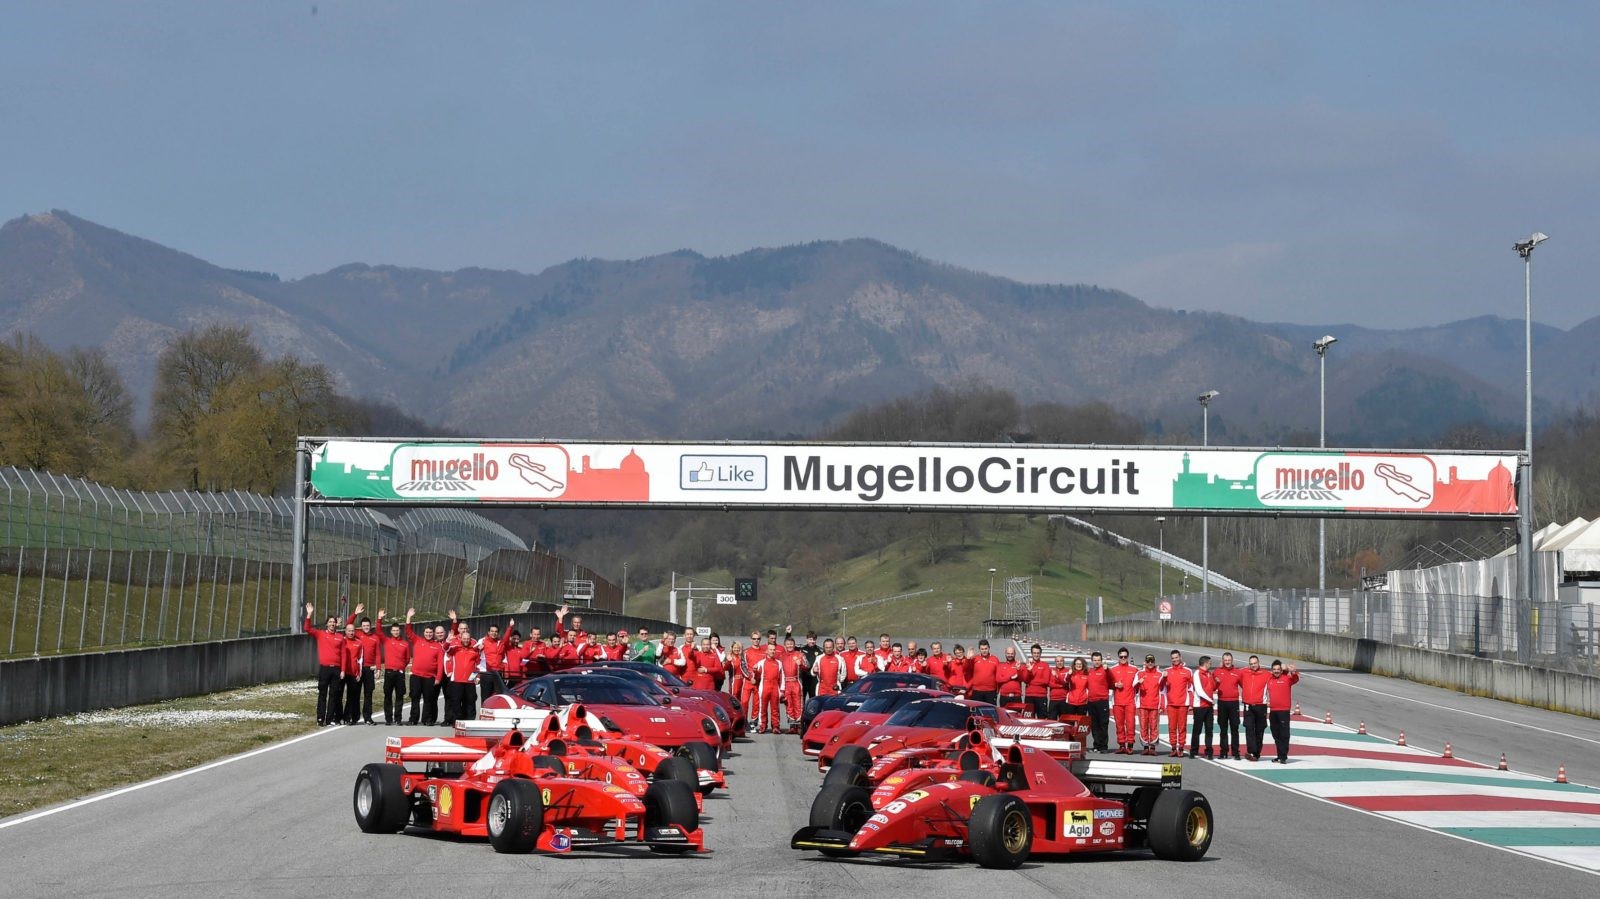 Ferraris at Mugello circuit.